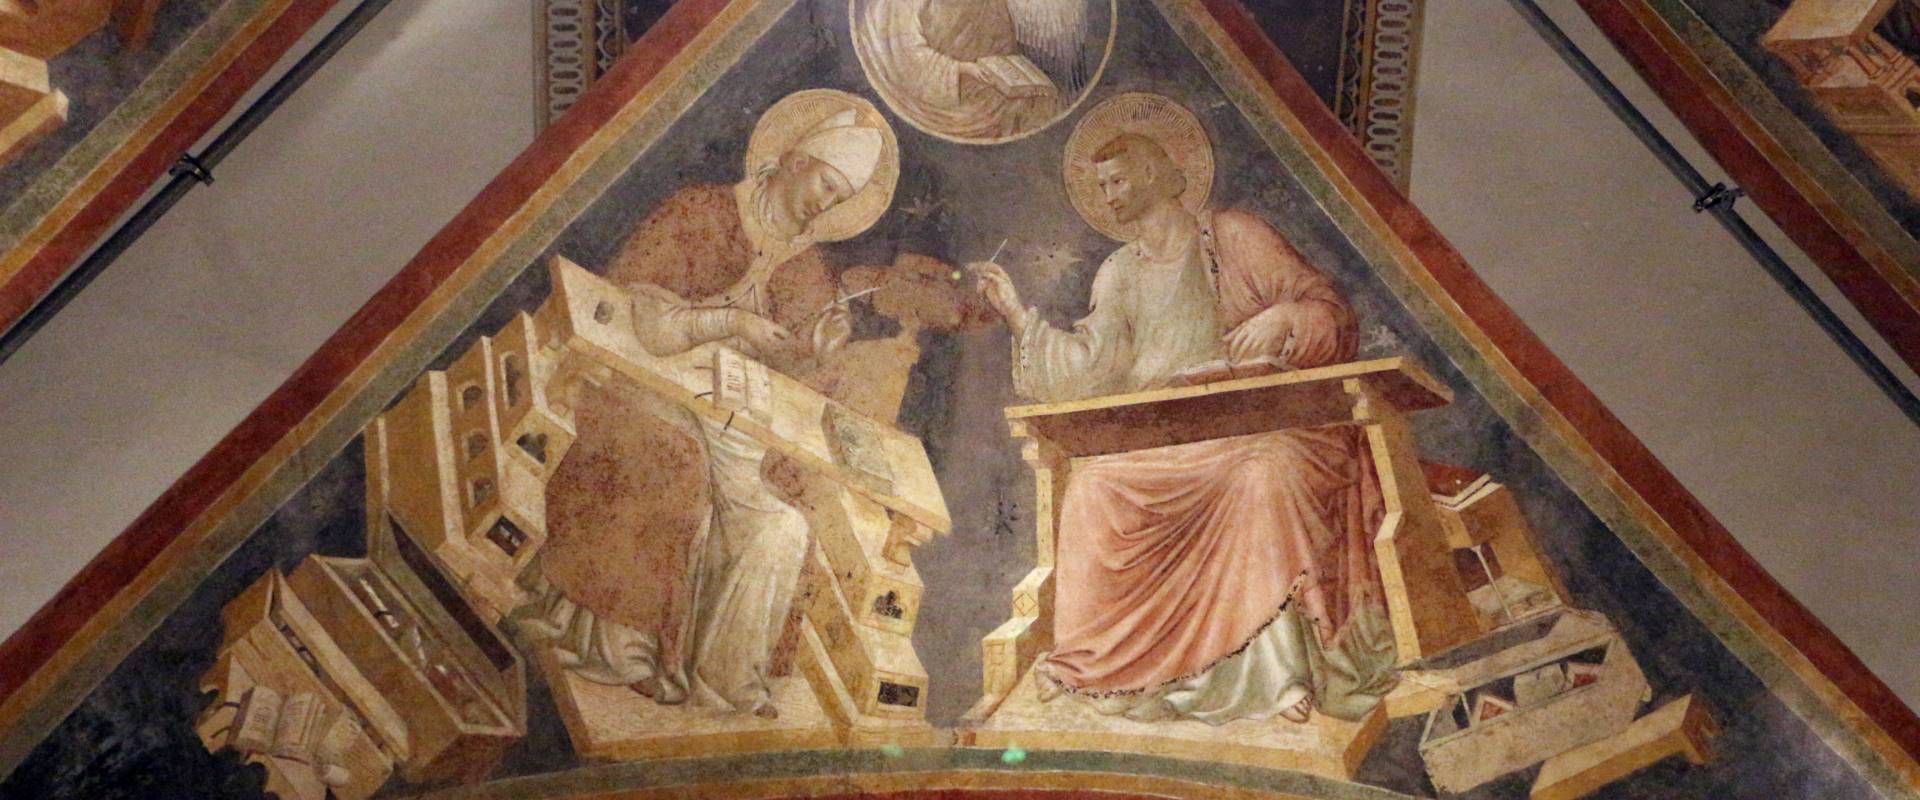 Pietro da rimini e bottega, affreschi dalla chiesa di s. chiara a ravenna, 1310-20 ca., volta con evangelisti e dottori, girolamo e matteo photo by Sailko